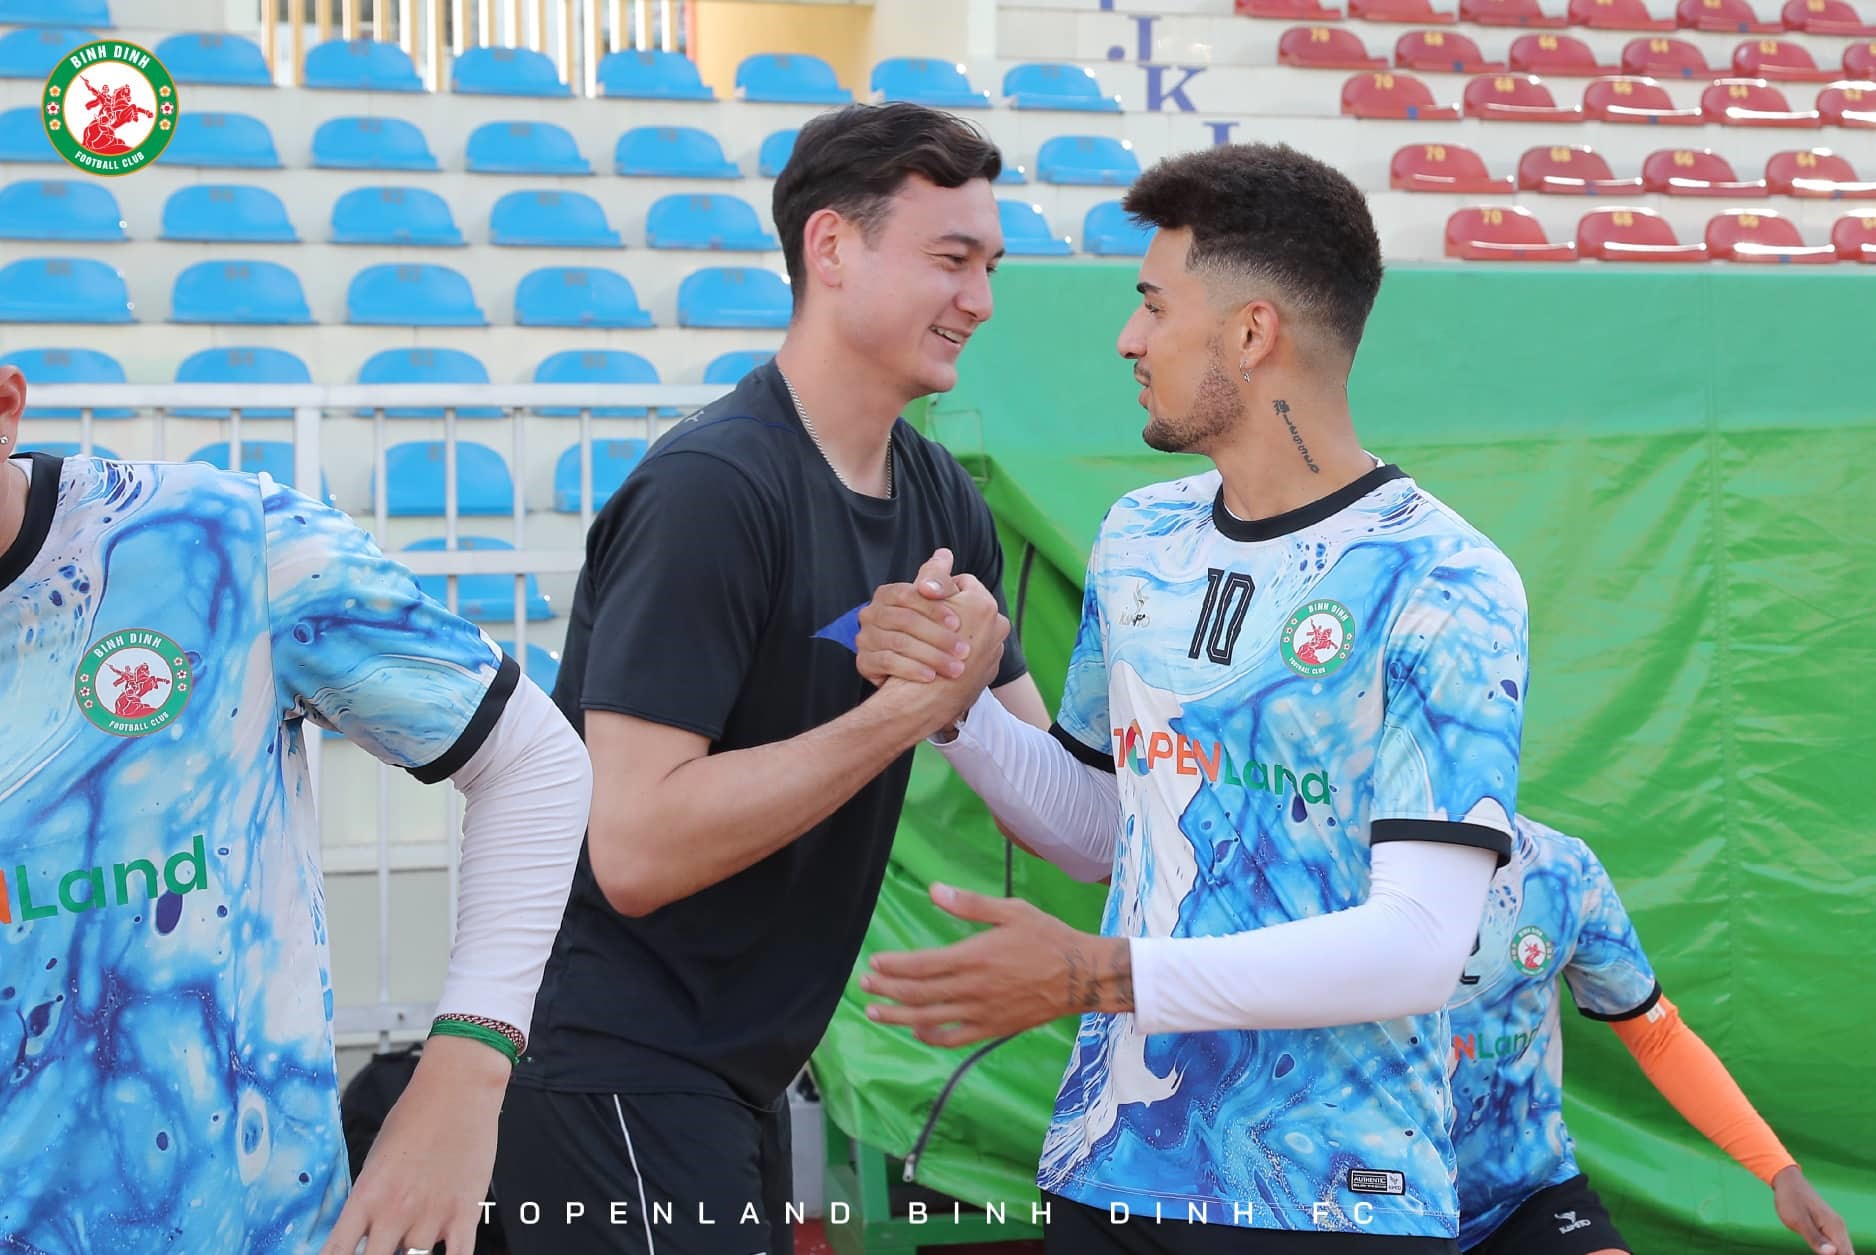 Đặng Văn Lâm vui vẻ bắt tay với tiền vệ Hendrio - một trong những cầu thủ quan trọng nhất của Bình Định. Đội bóng đất võ đang chuẩn bị cho trận gặp Thanh Hóa trên sân nhà lúc 18h00 ngày 20.8